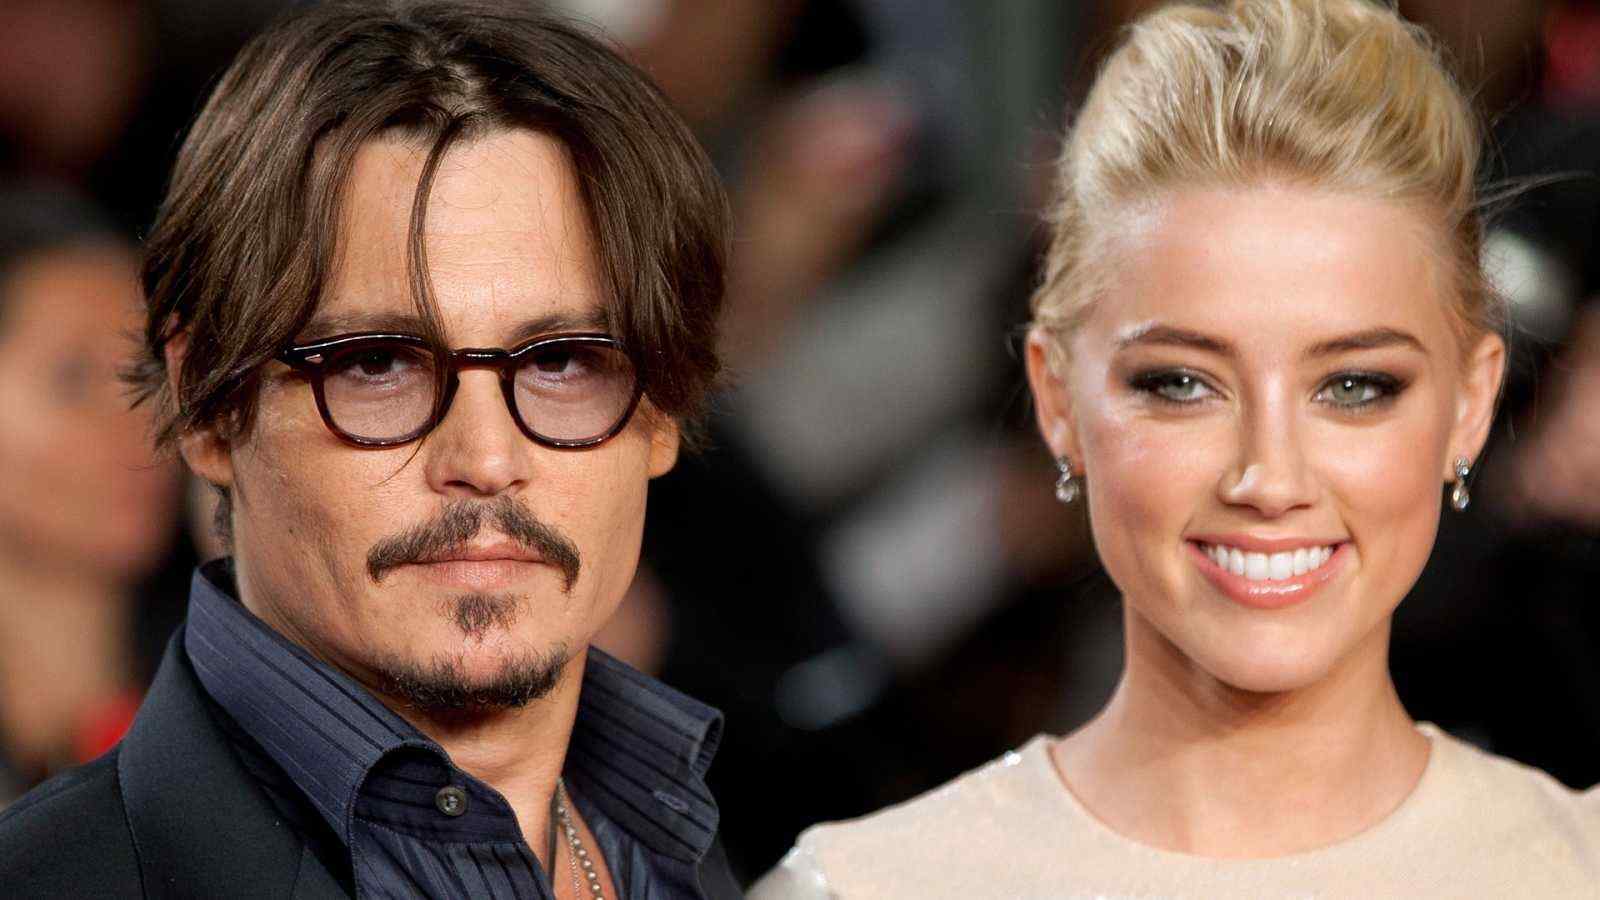 El docusèrie sobre el judici de Johnny Depp i Amber Heard arriba a Netflix la setmana que ve